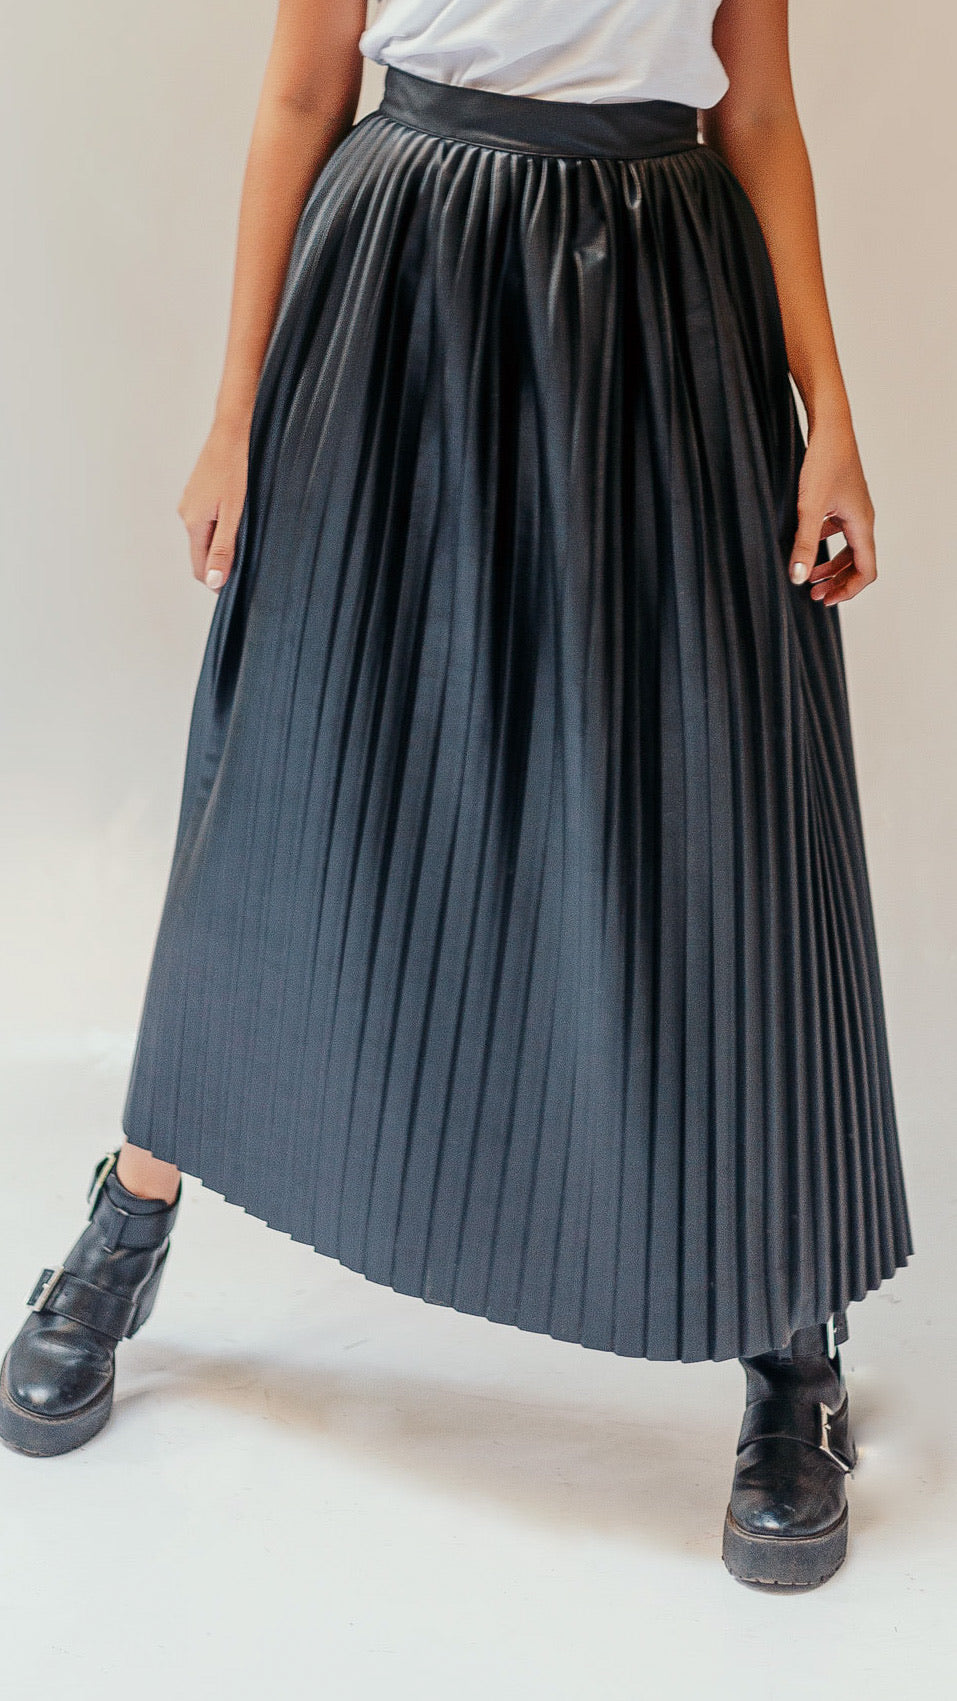 Leather Pleats Skirt - Black